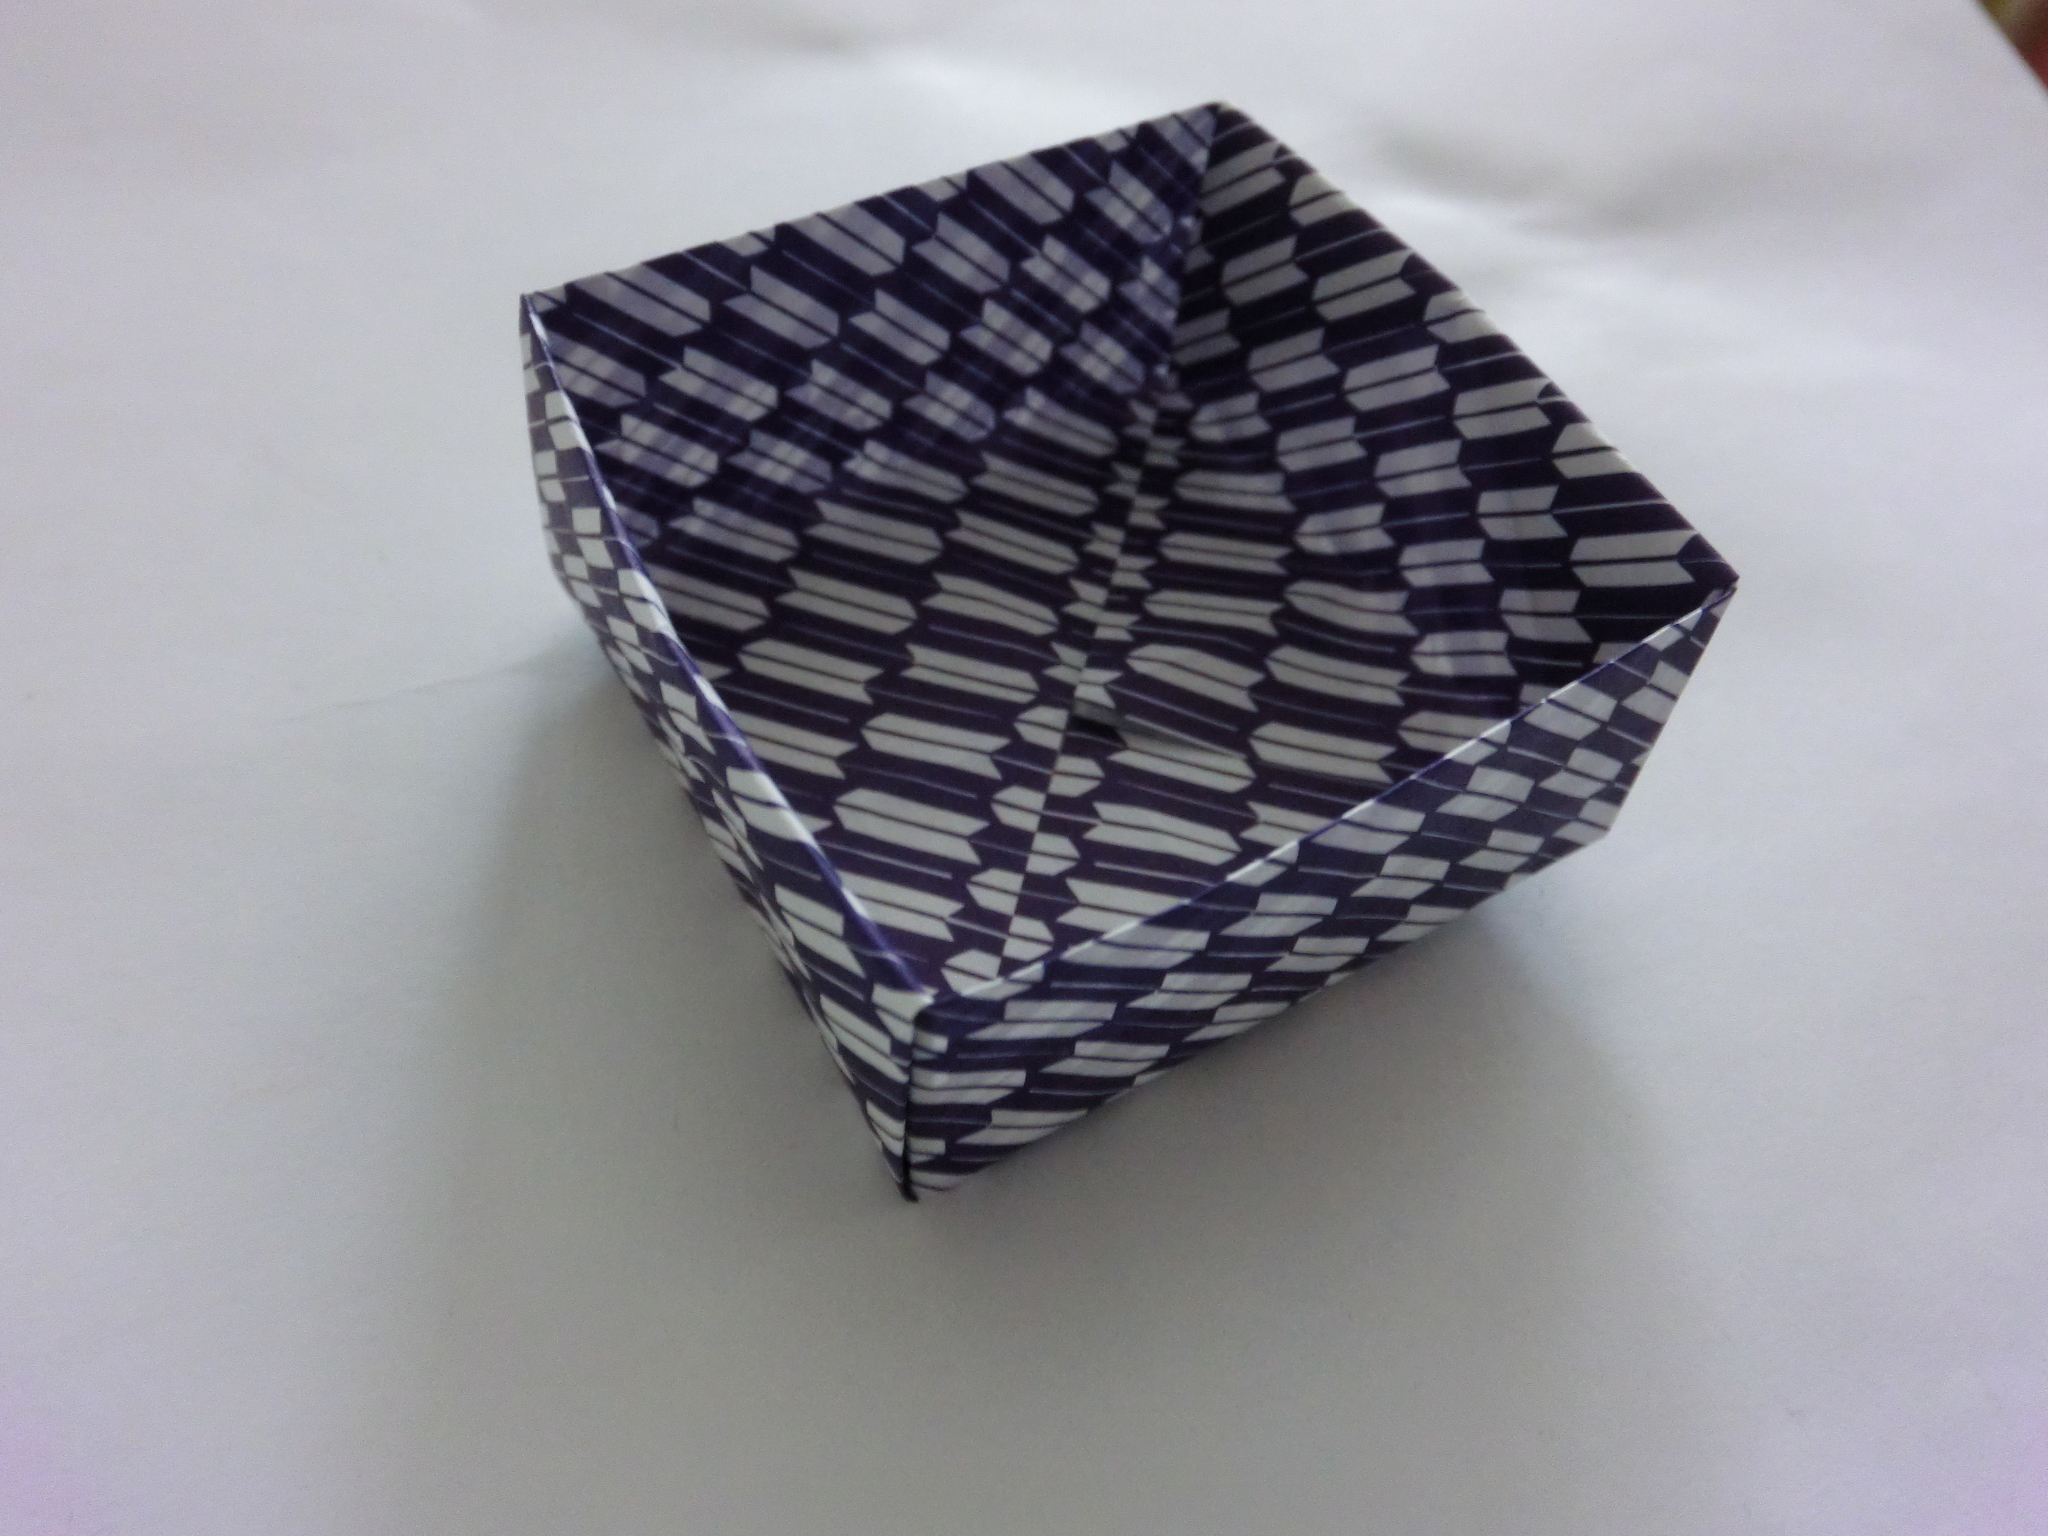 折り紙の簡単な箱の折り方 子供でも折れる折り方は イクメン主夫の役立つブログ